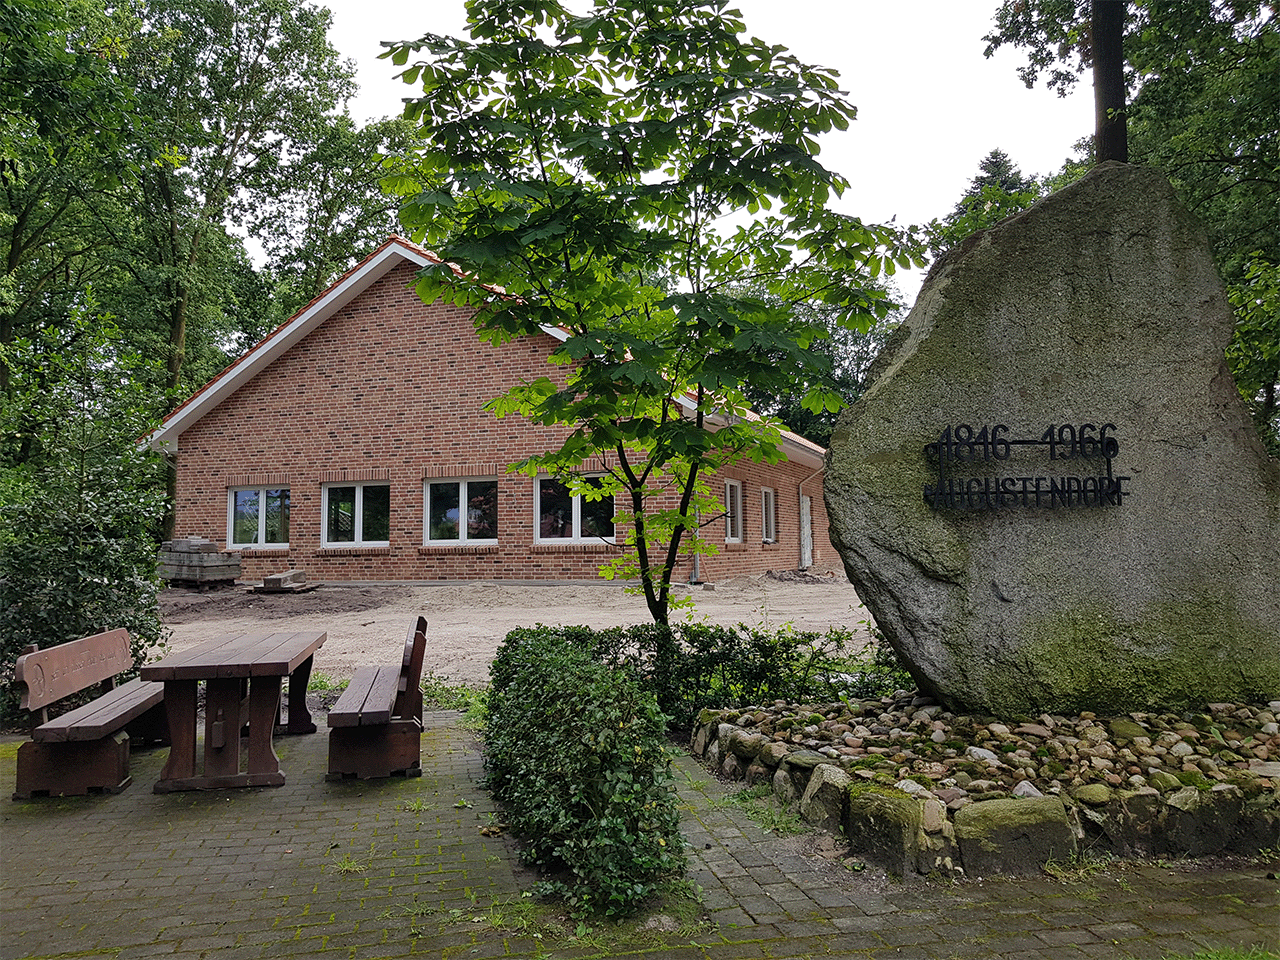 Image - Dorfgemeinschafts-haus in Augustendorf